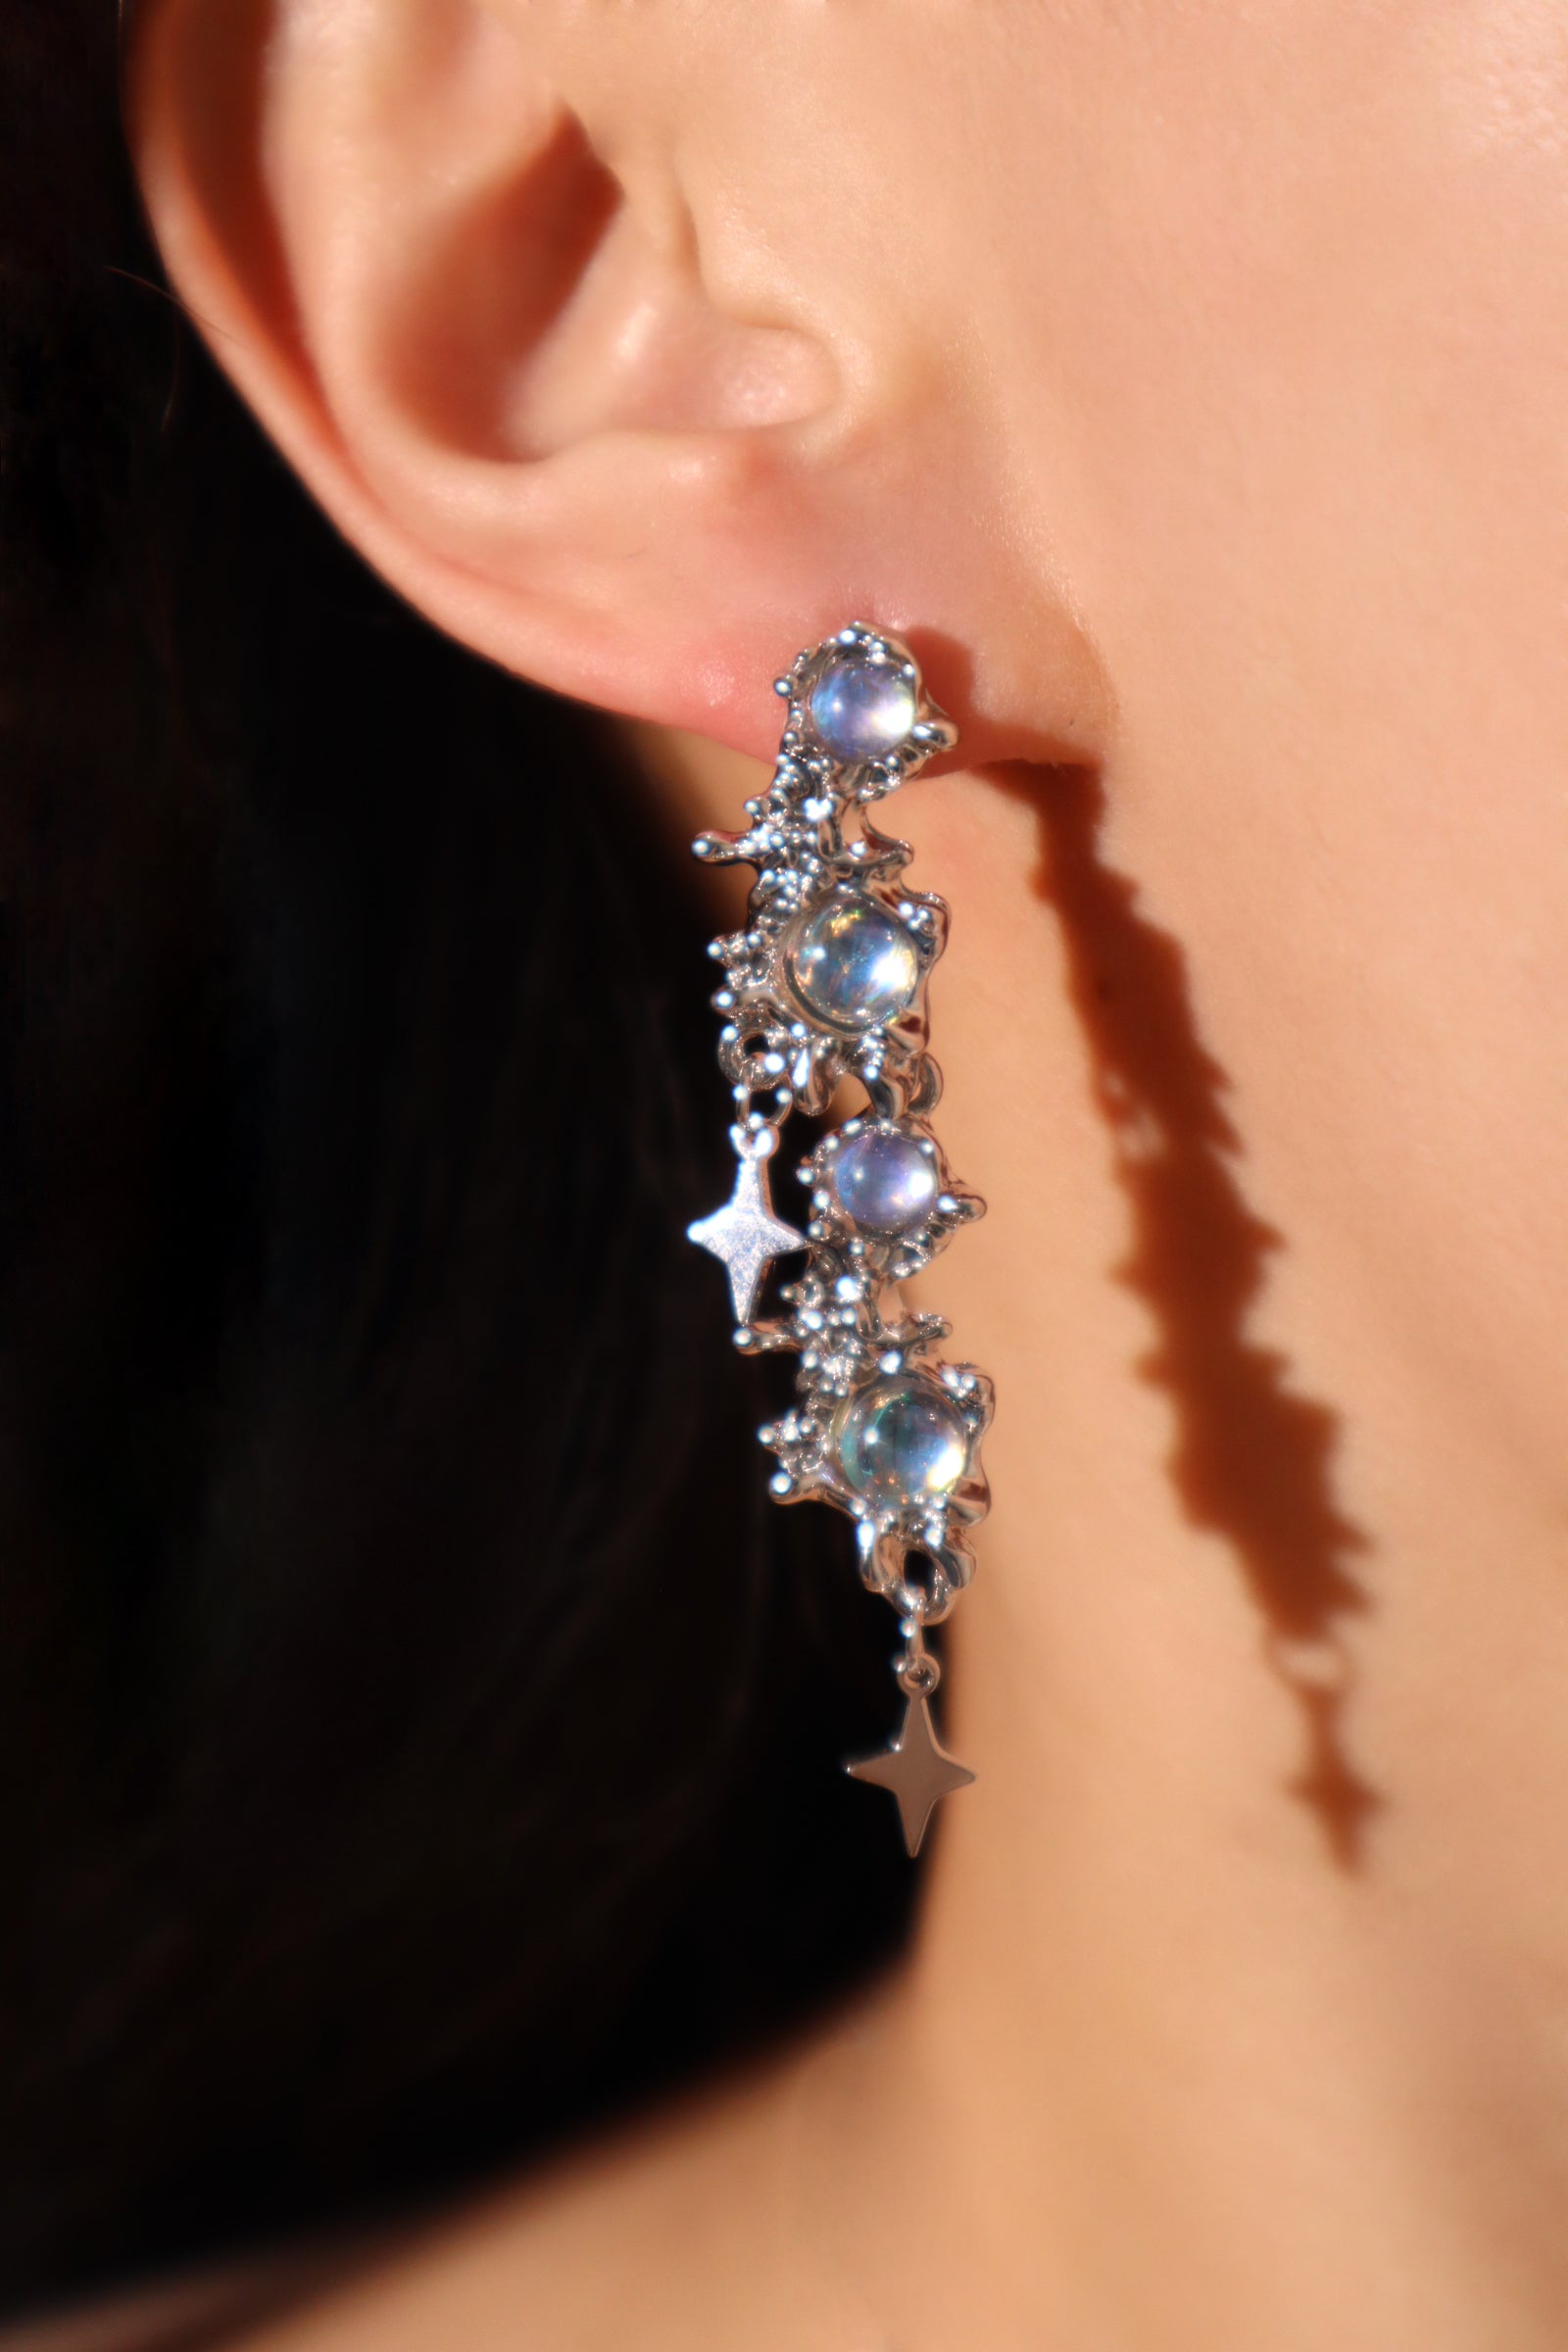 3 in 1 Moonstones Star earrings